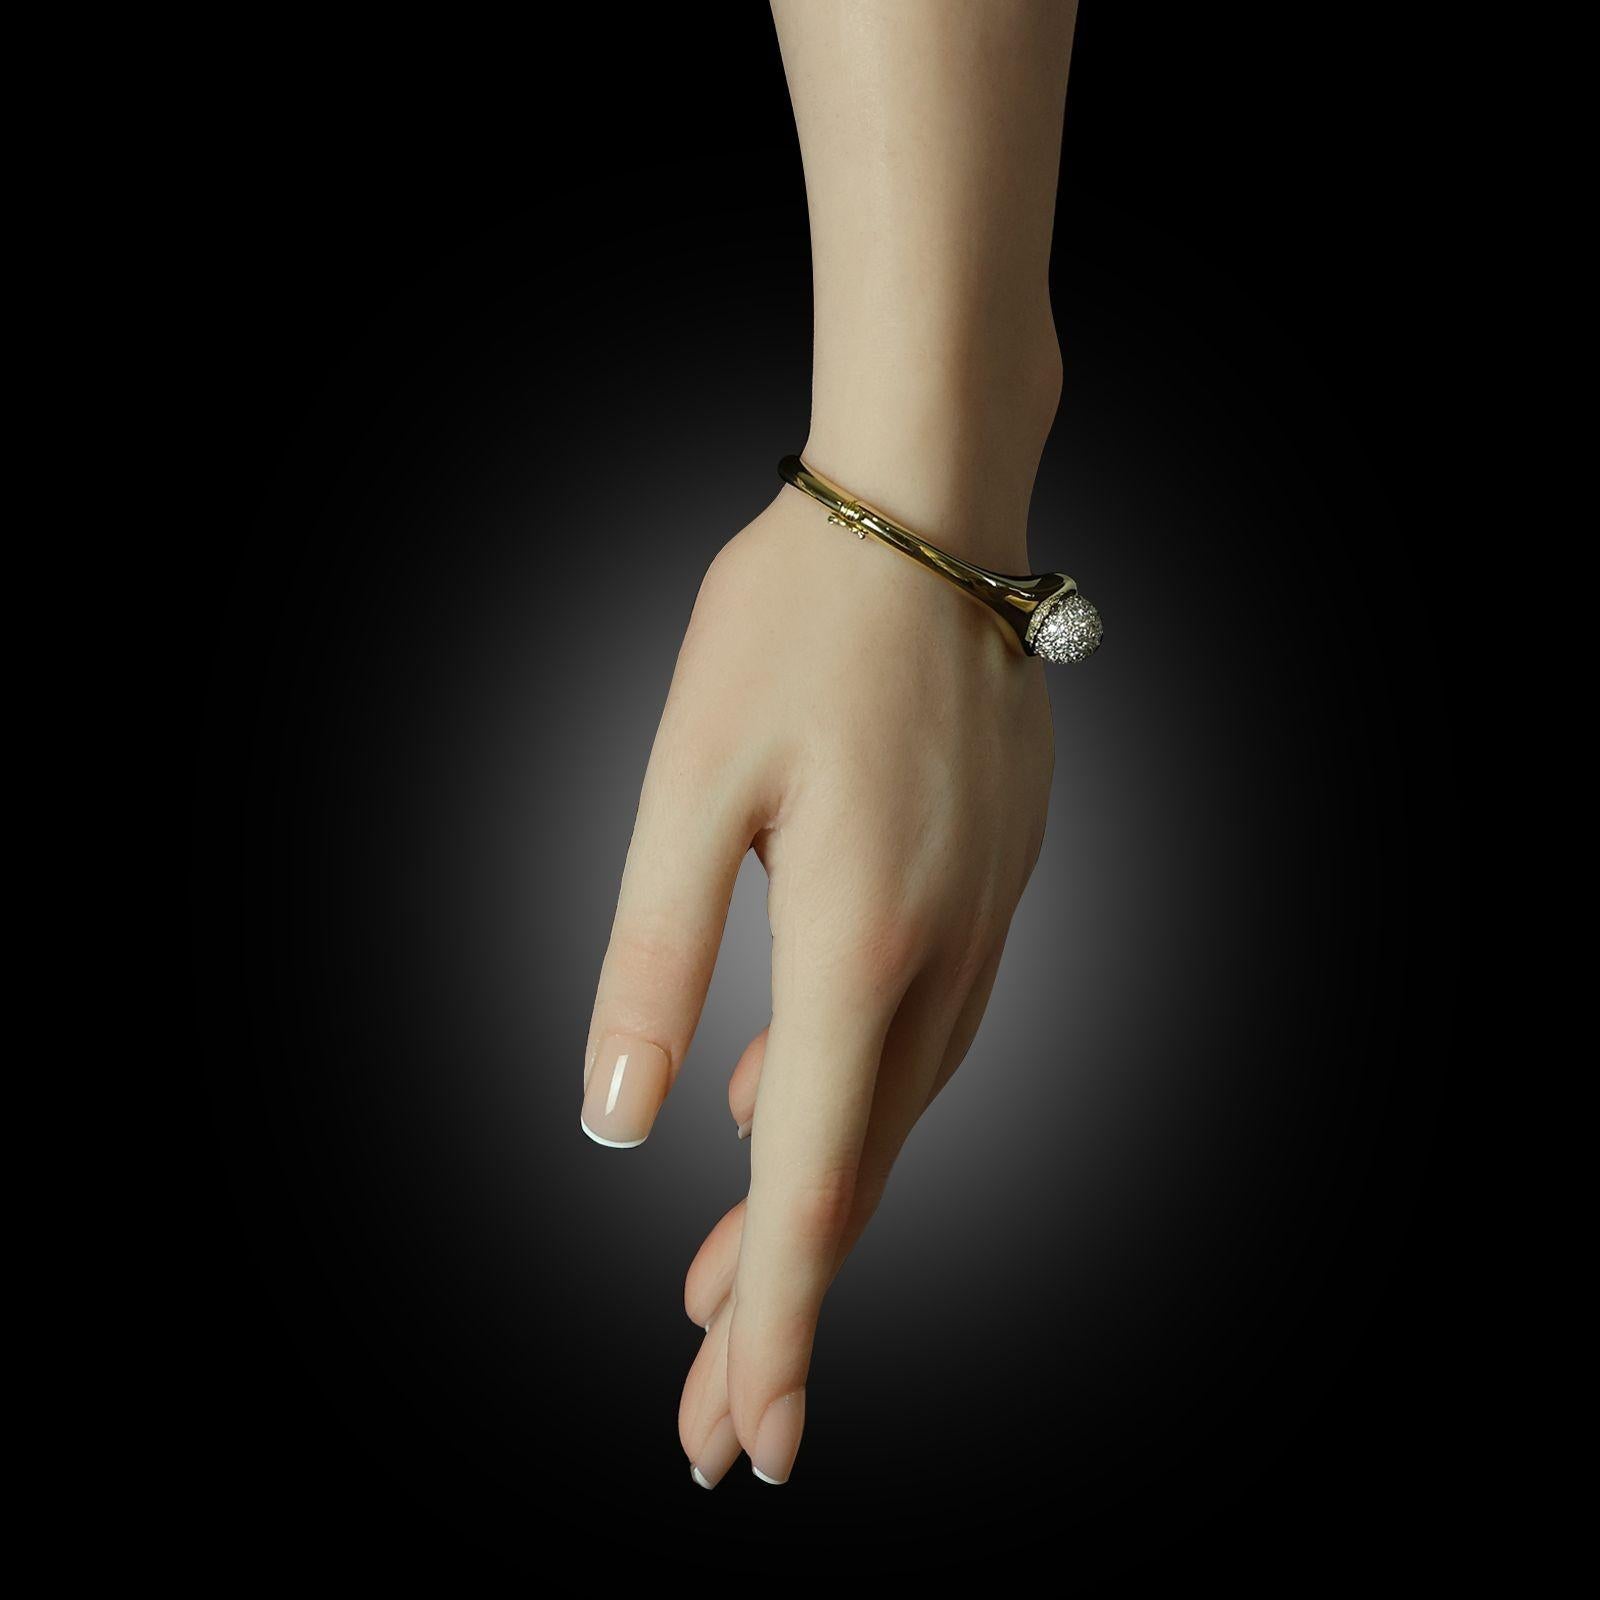 Ein von Paloma Picasso für Tiffany & Co. um 1980 entworfener Armreif aus Gold und Diamanten. Der massive Armreif aus 18 Karat Gelbgold hat ein ovales Profil, ist seitlich mit einem Scharnier versehen und verjüngt sich nach oben hin, wo sich eine